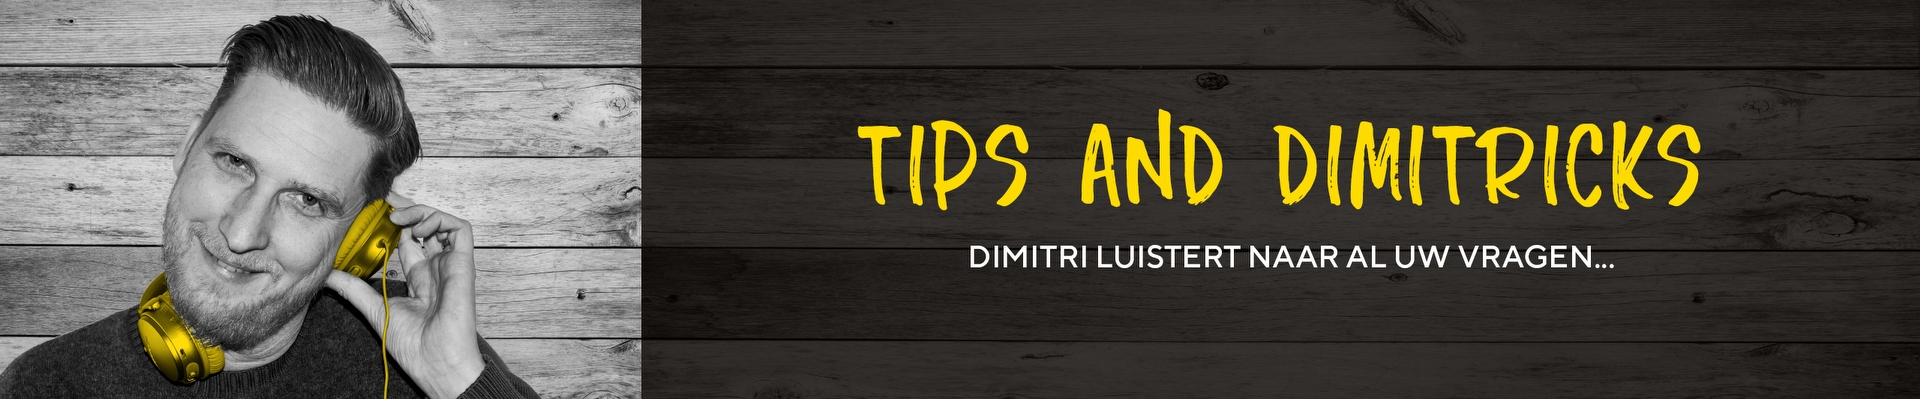 Tips & Dimitricks